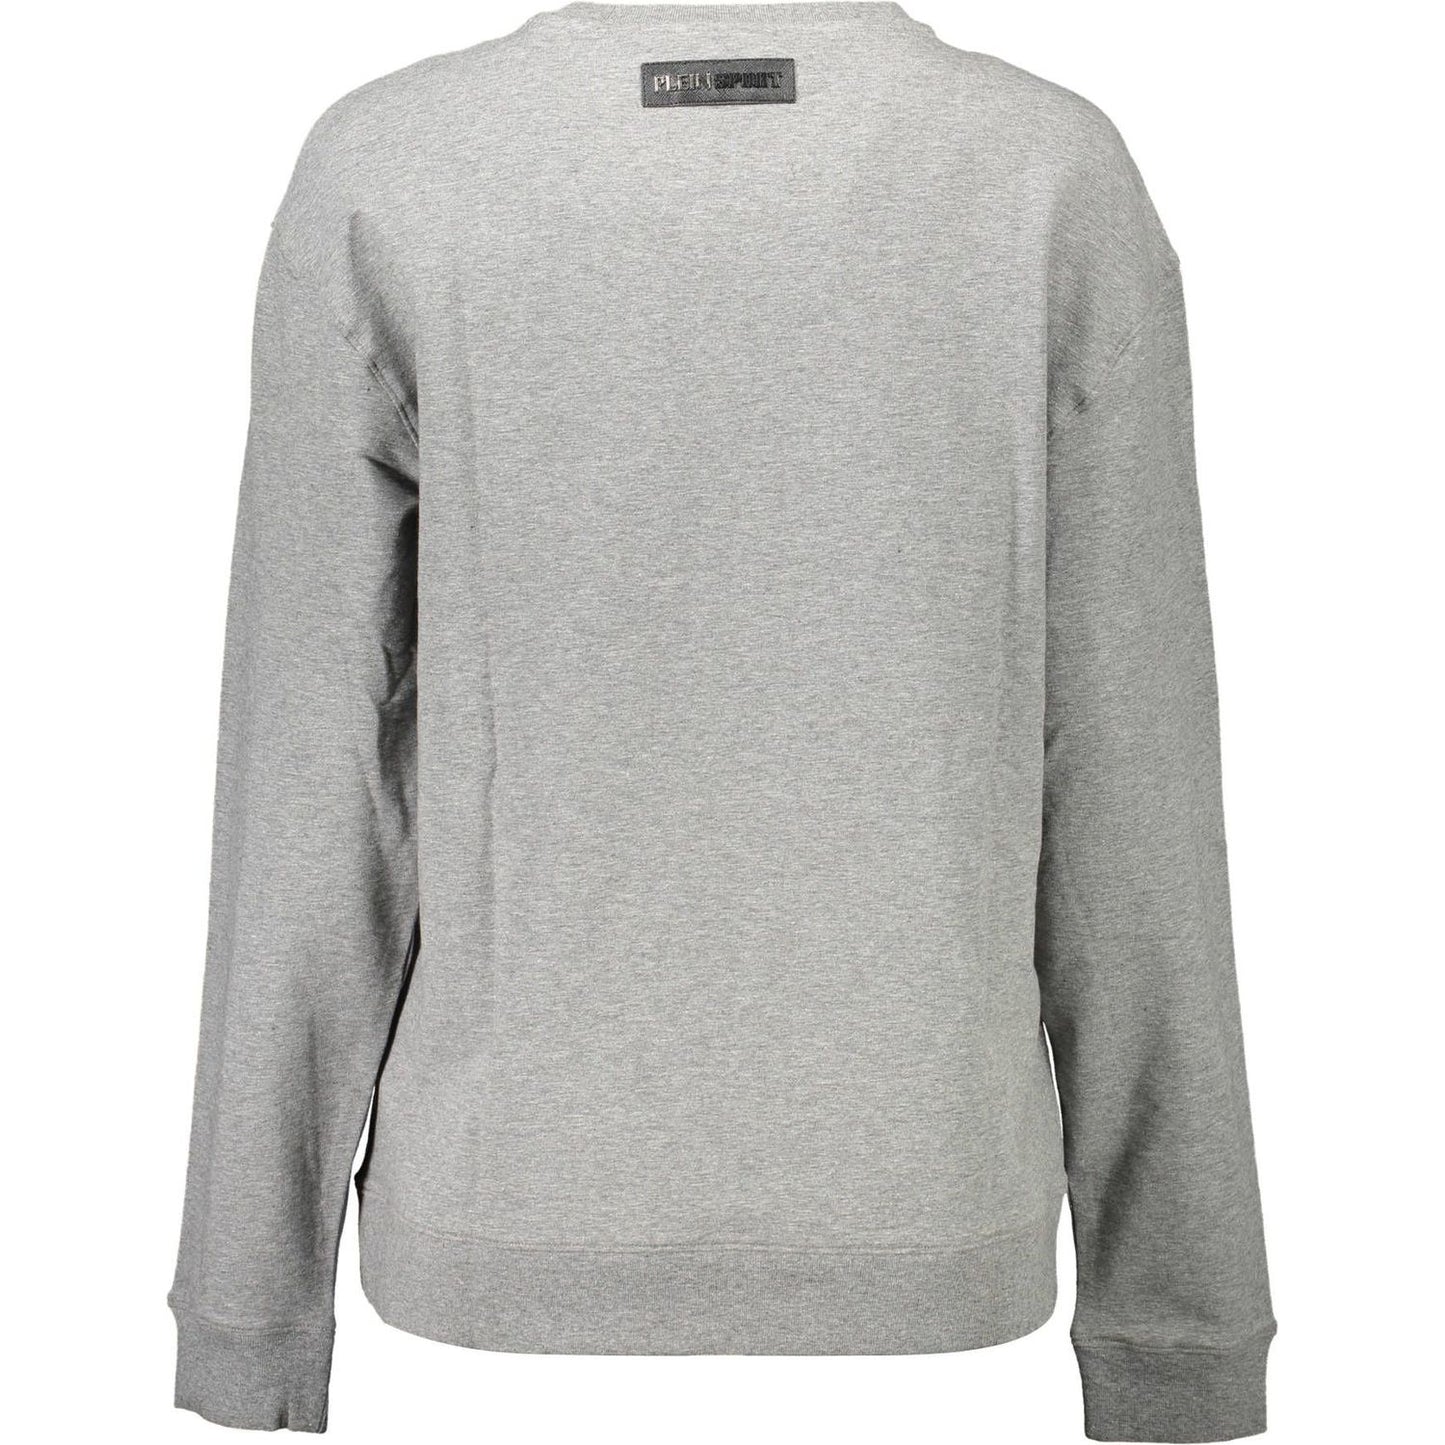 Plein Sport Chic Gray Contrast Detail Sweatshirt chic-gray-contrast-detail-sweatshirt